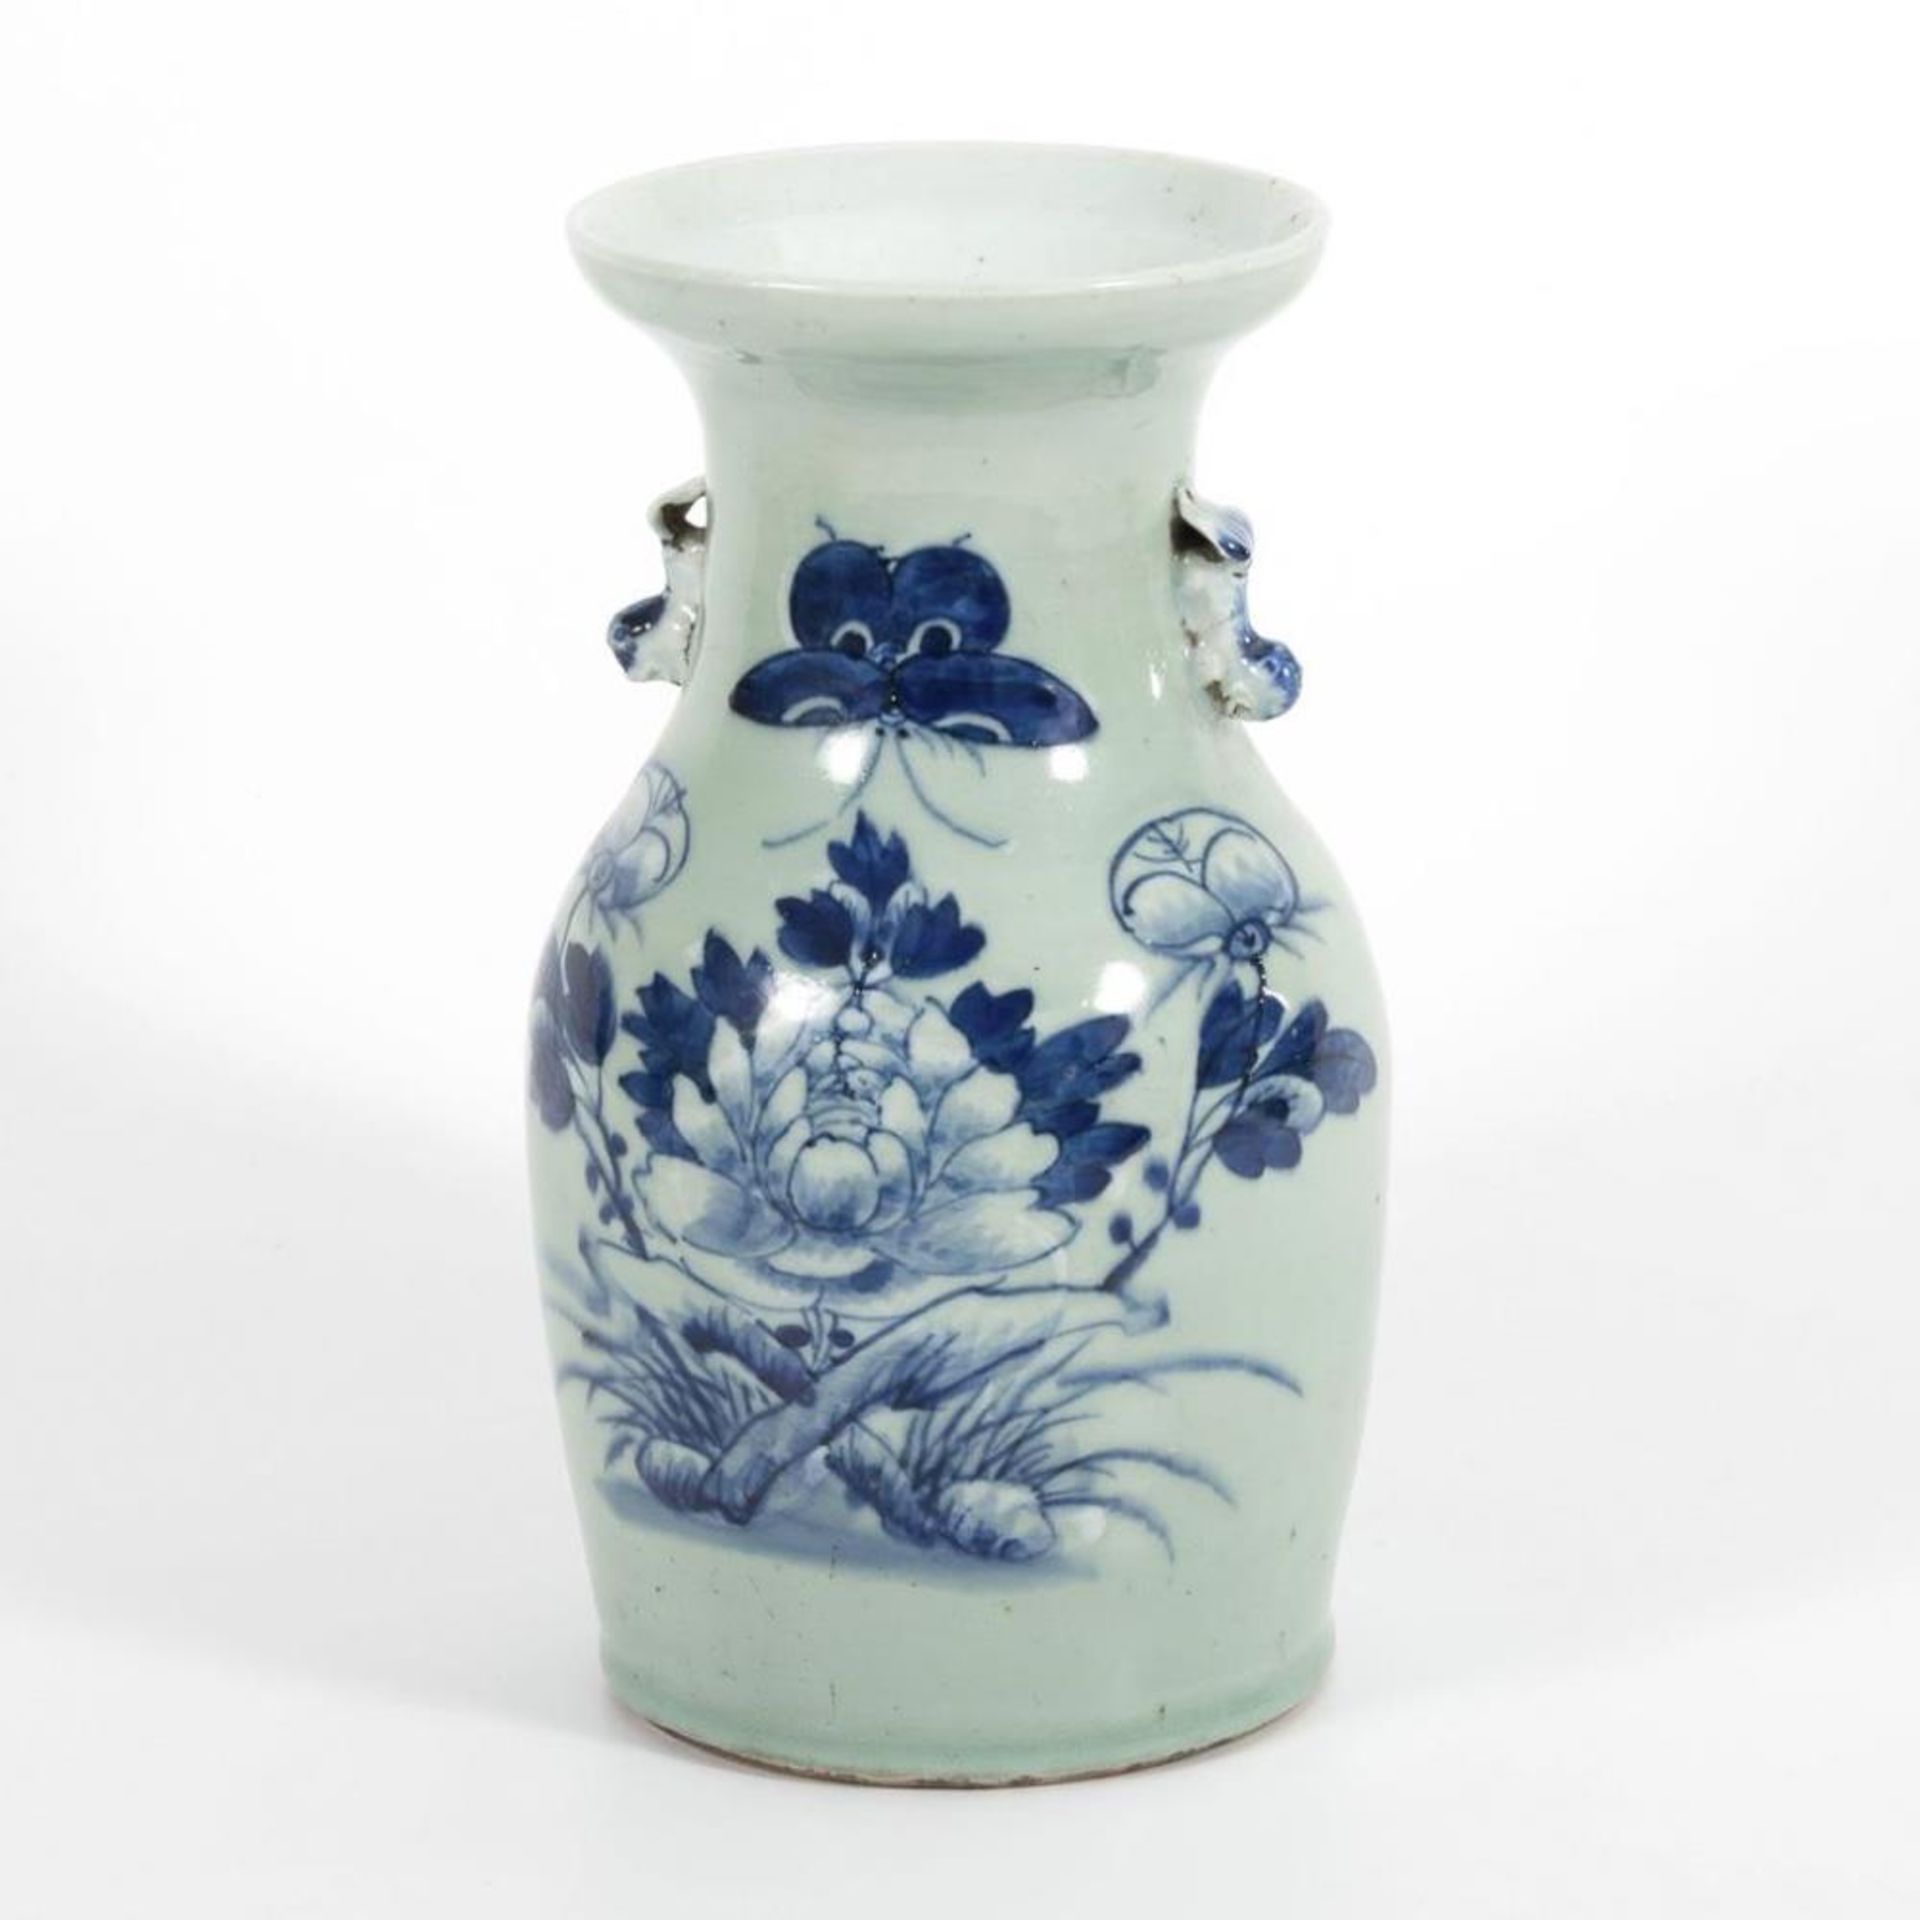 Unterglasurblau-Vase.